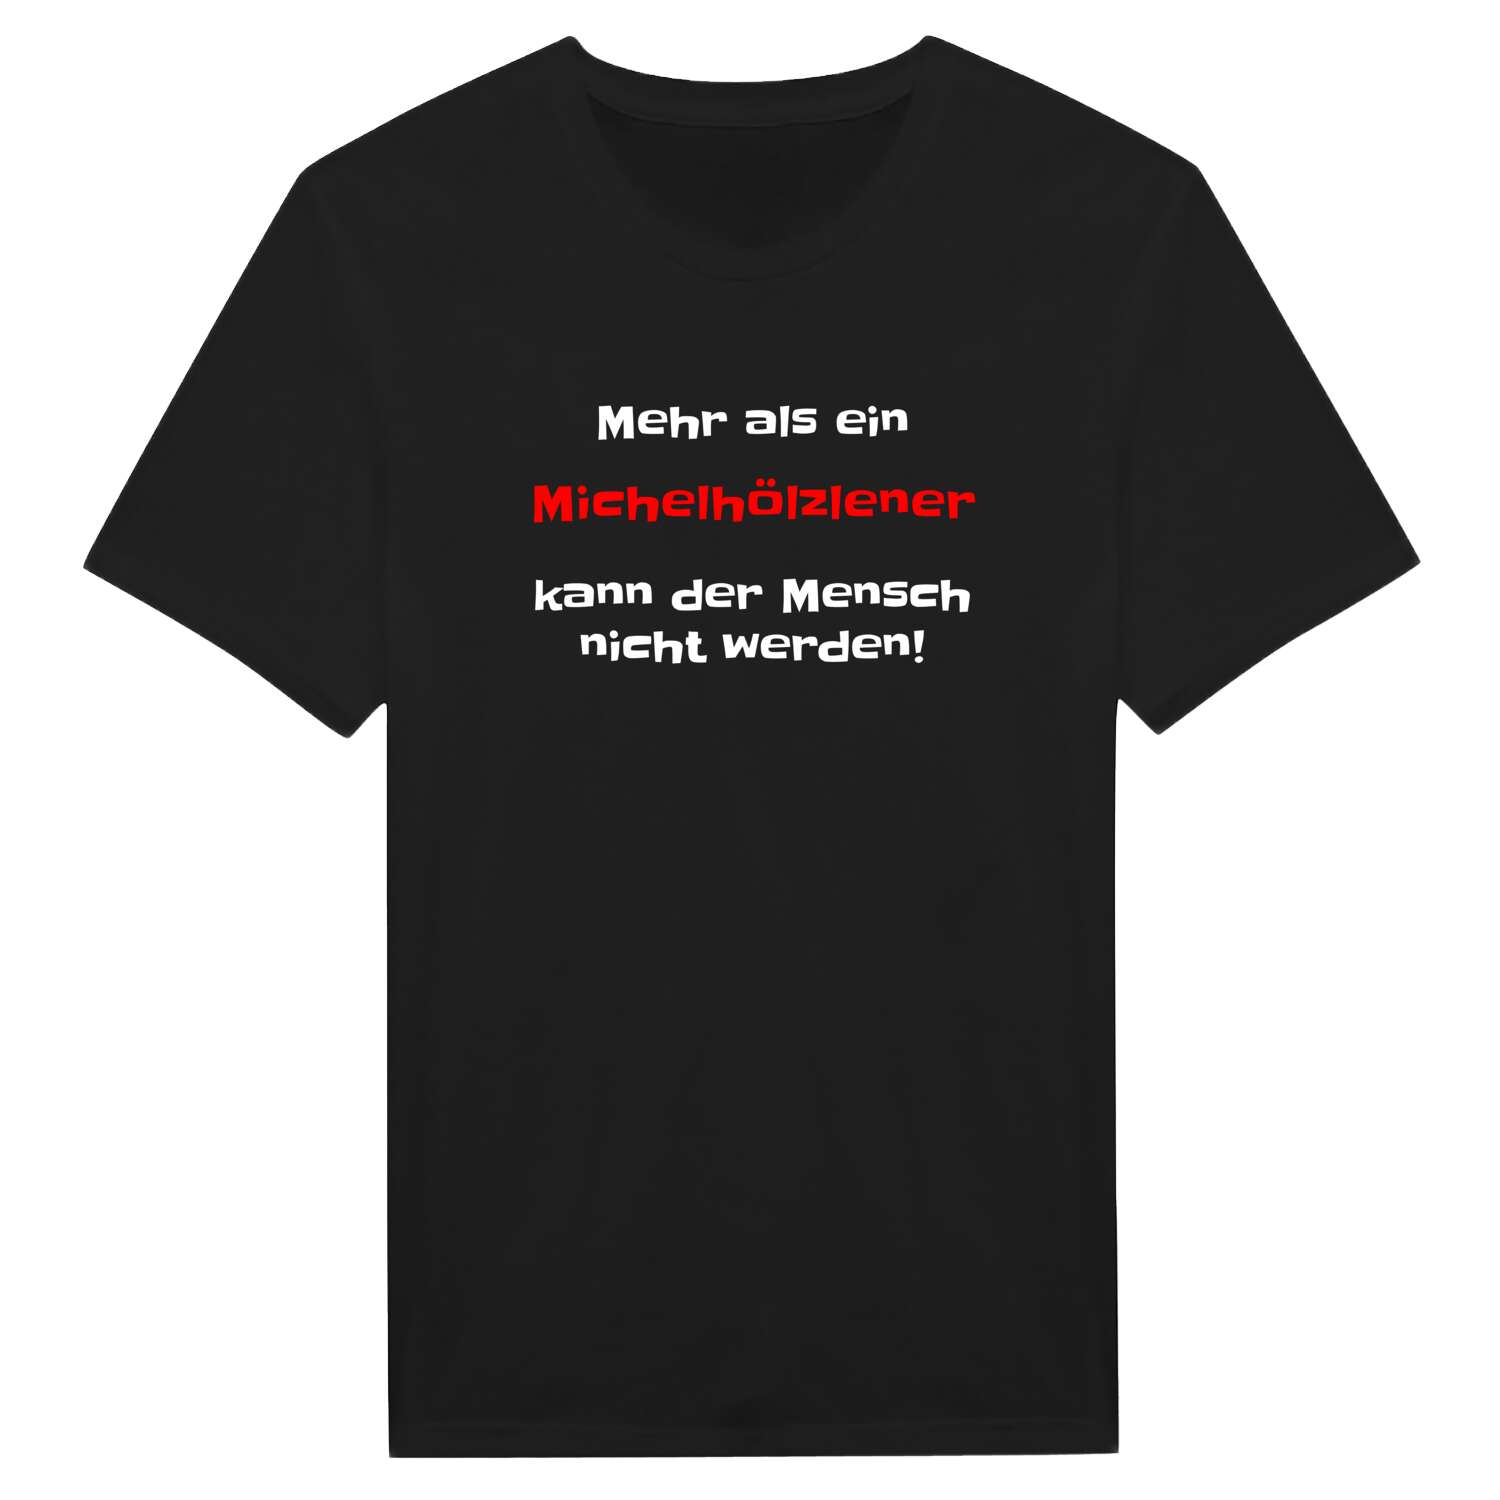 Michelhölzle T-Shirt »Mehr als ein«